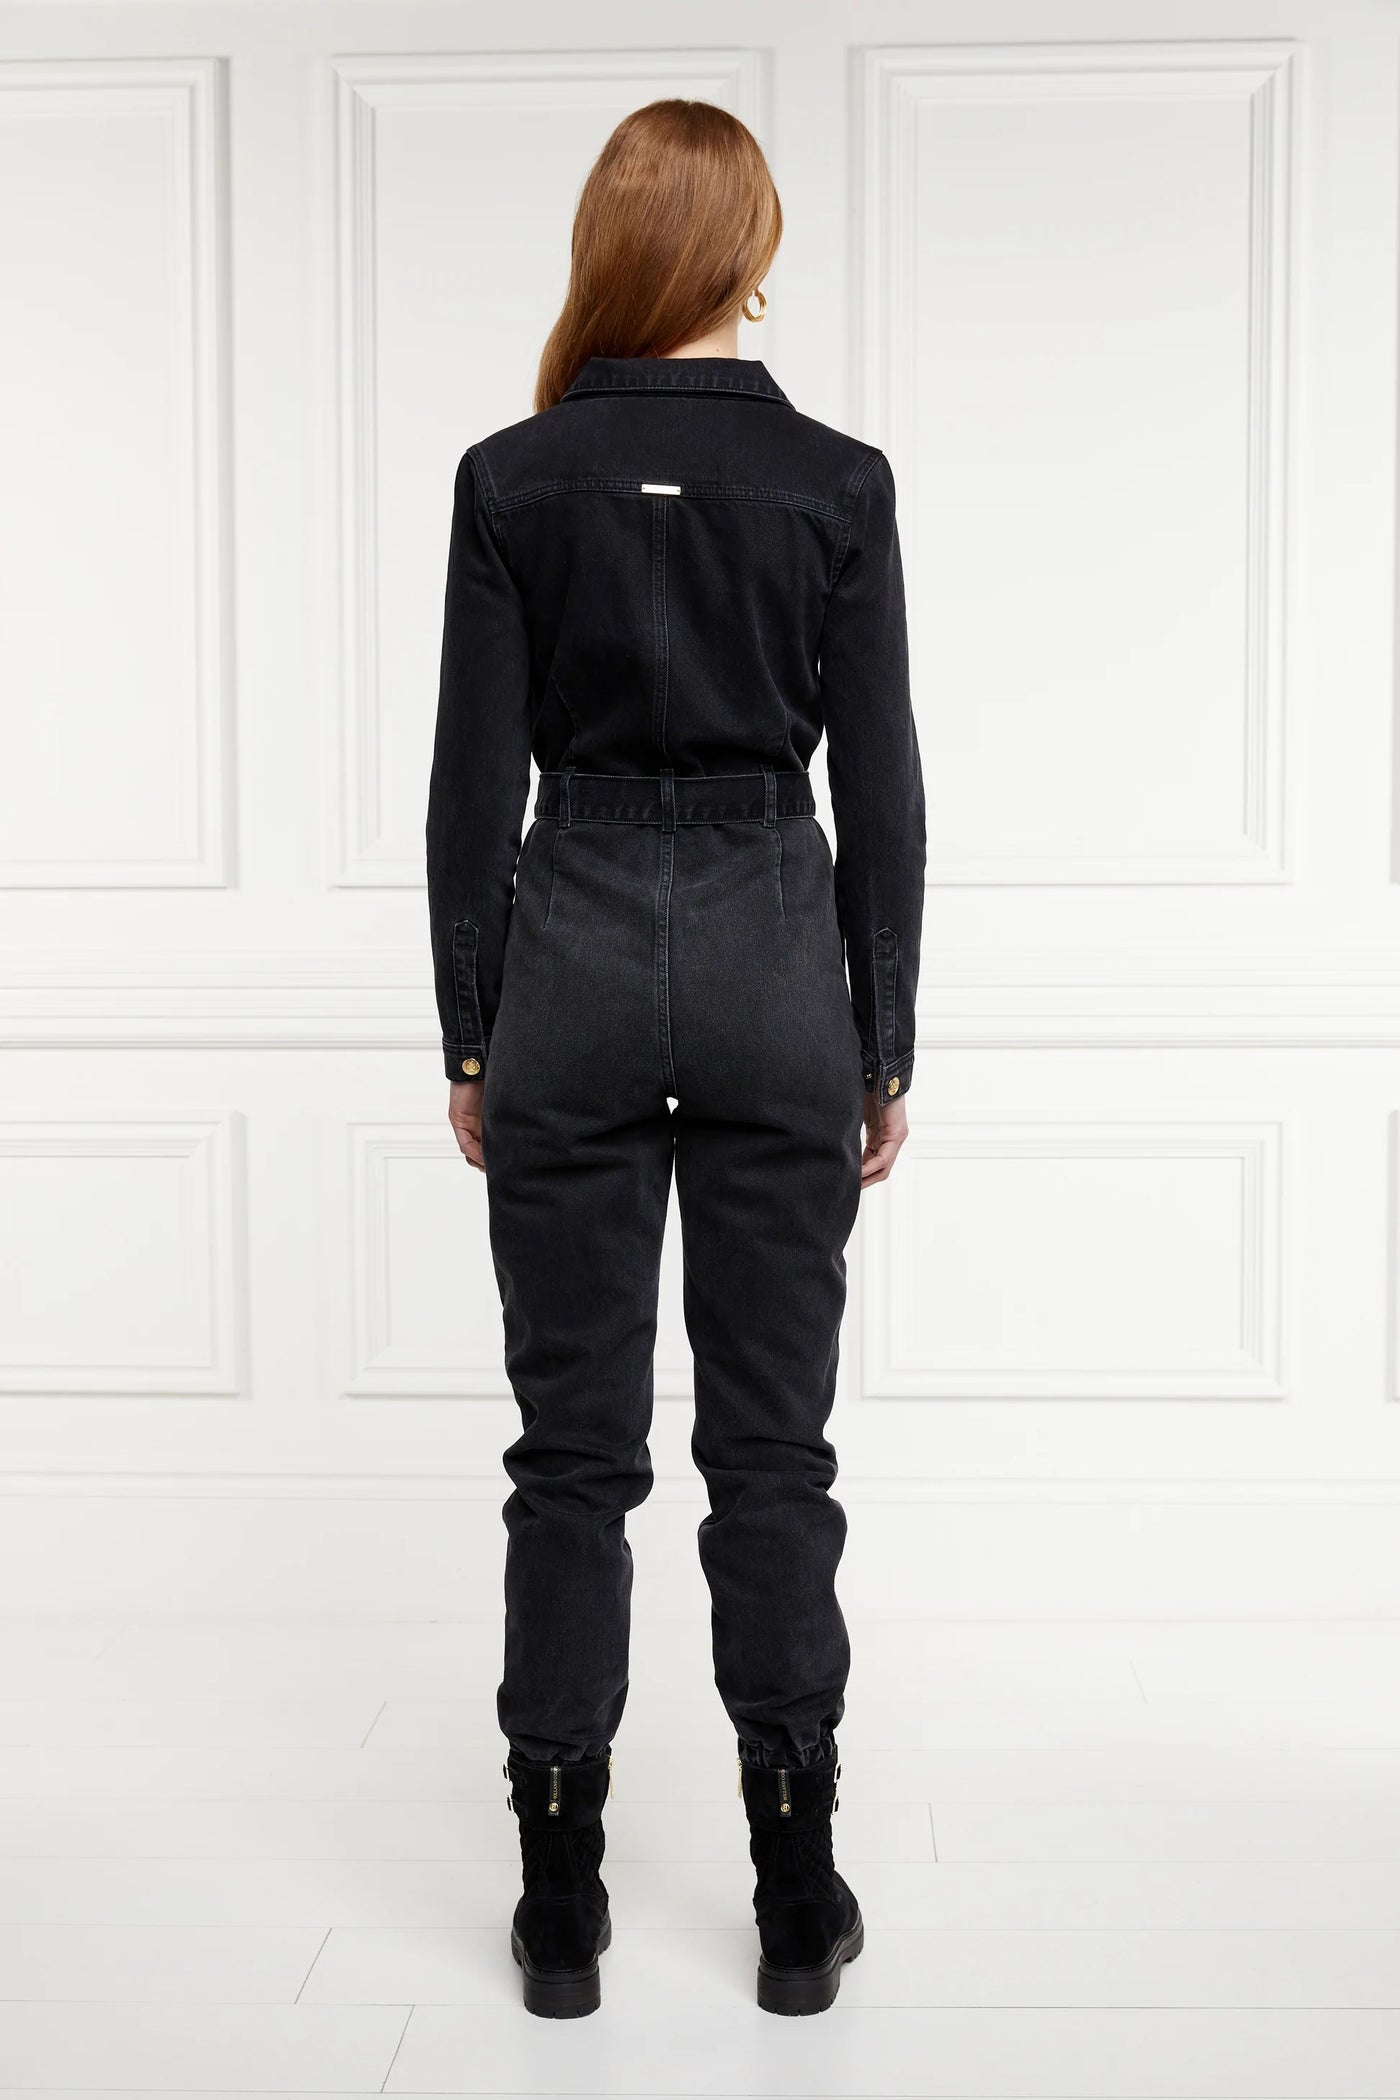 Holland Cooper Denim Jumpsuit in Washed Black Model Back